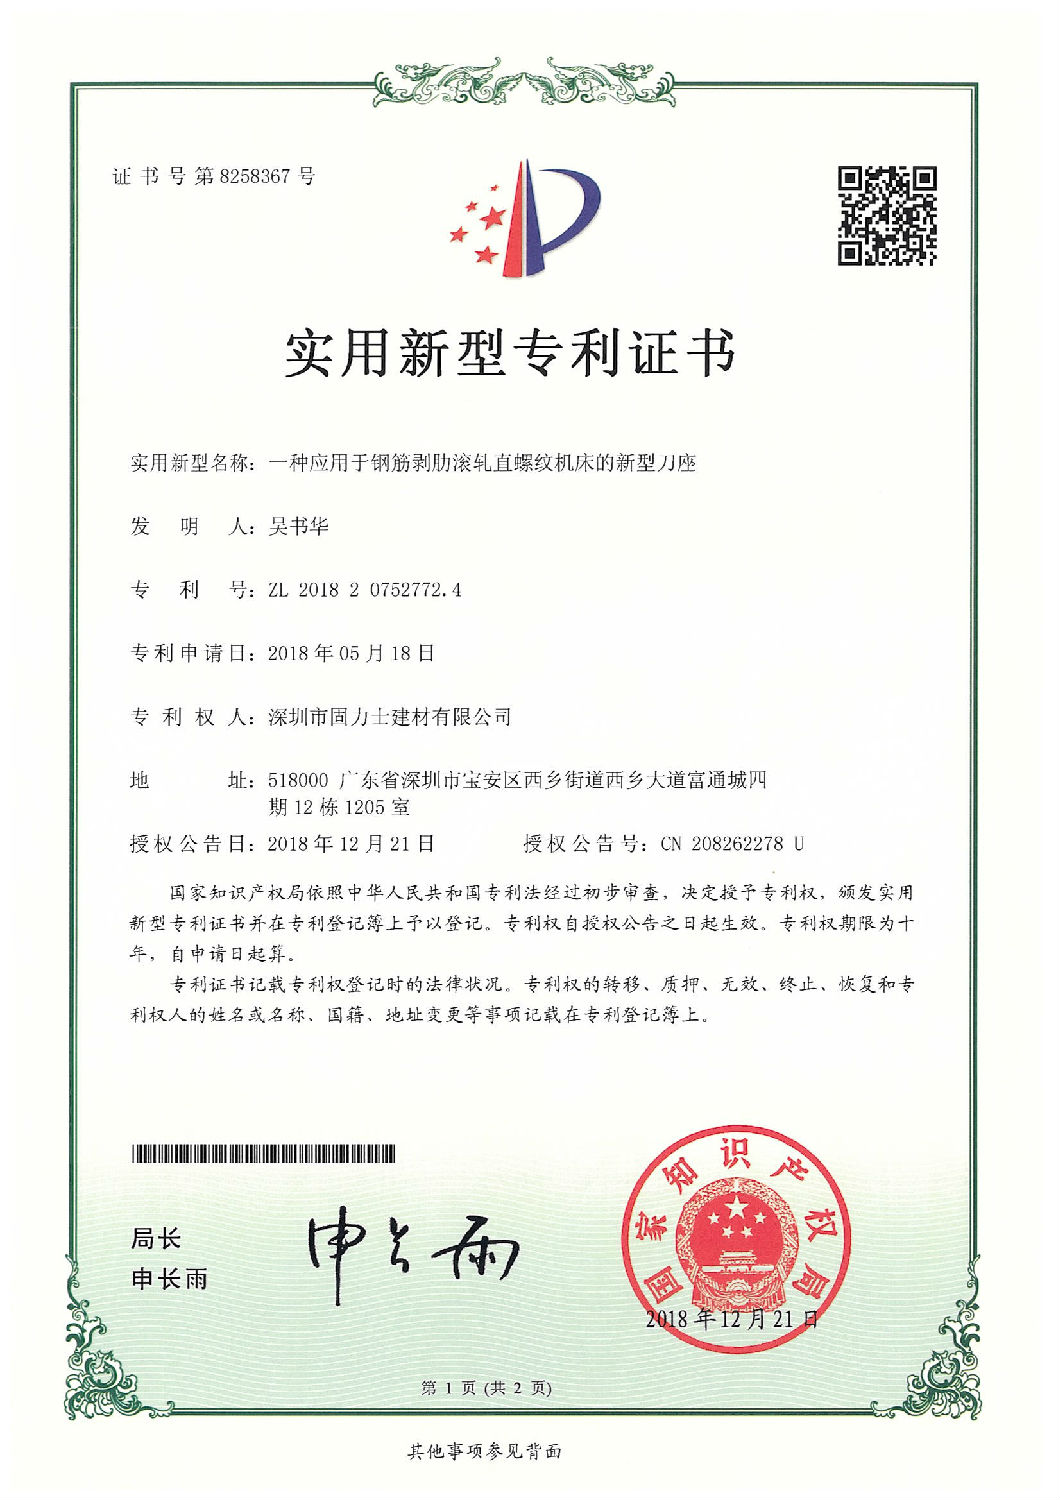 热烈祝贺深圳市固力士建材有限公司通过**高新技术企业认证